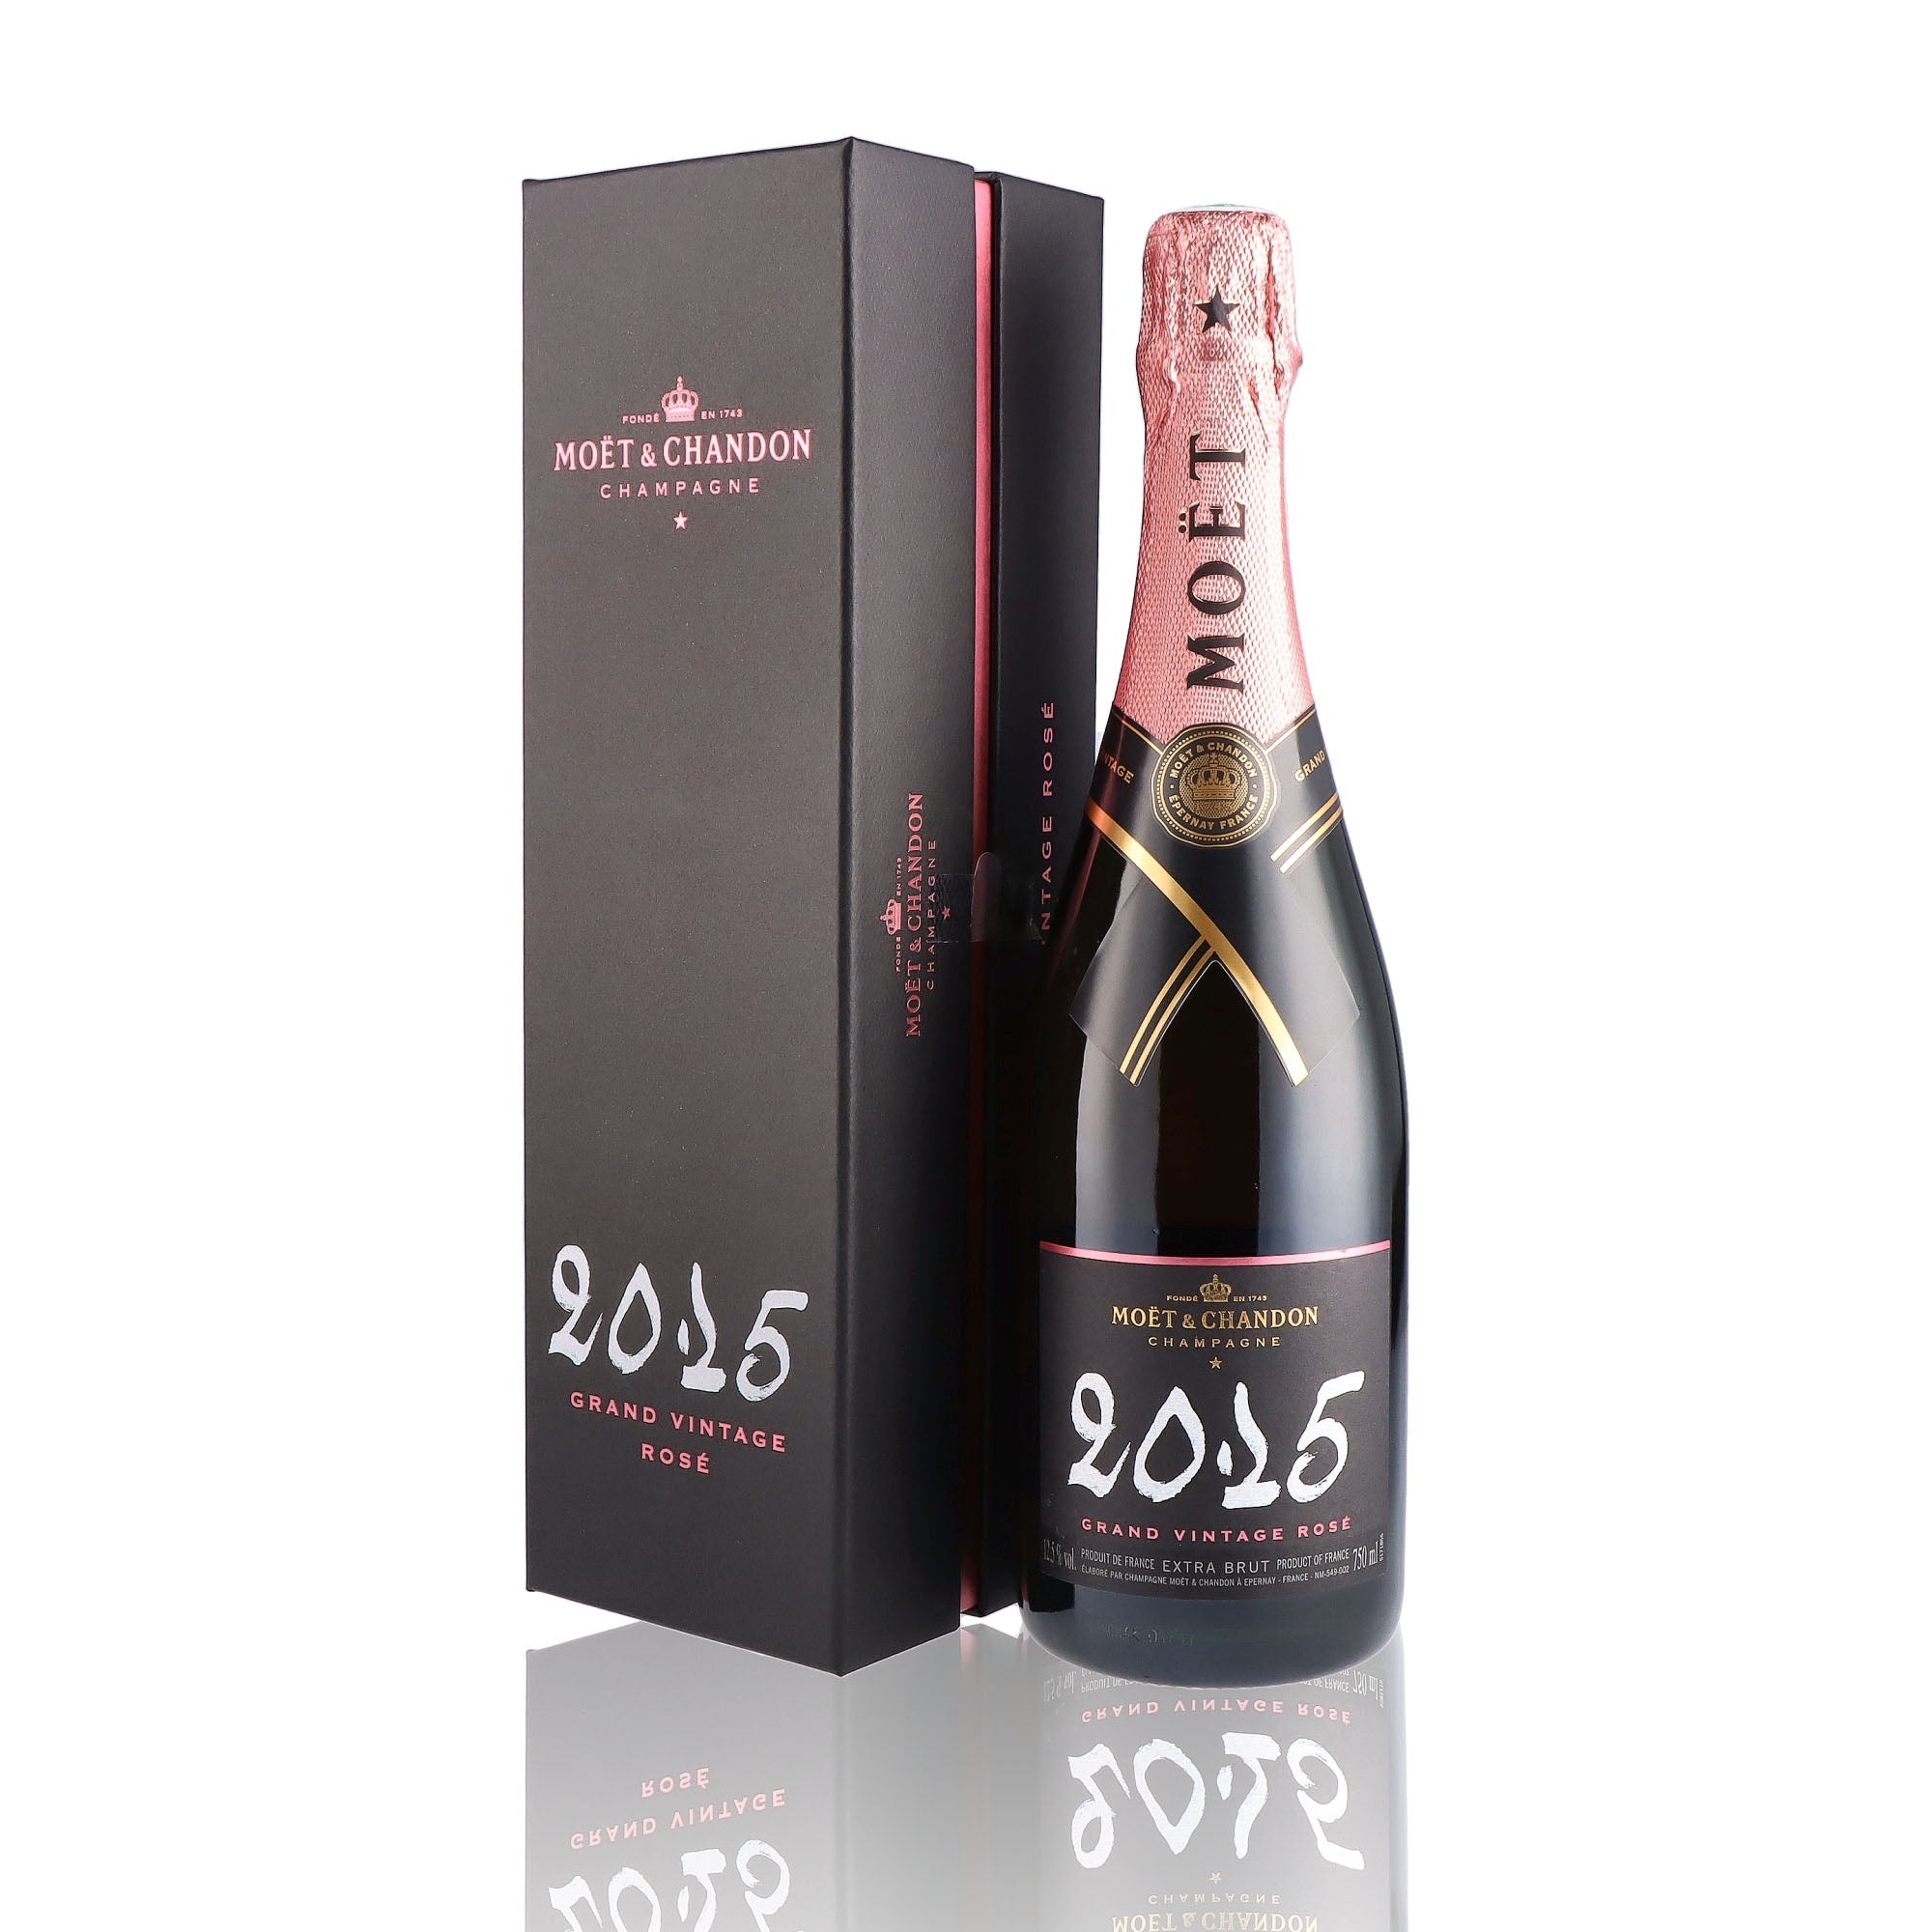 Une bouteille de champagne de la marque Moët et Chandon, de type rosé, nommée grand vintage, millésime 2015.